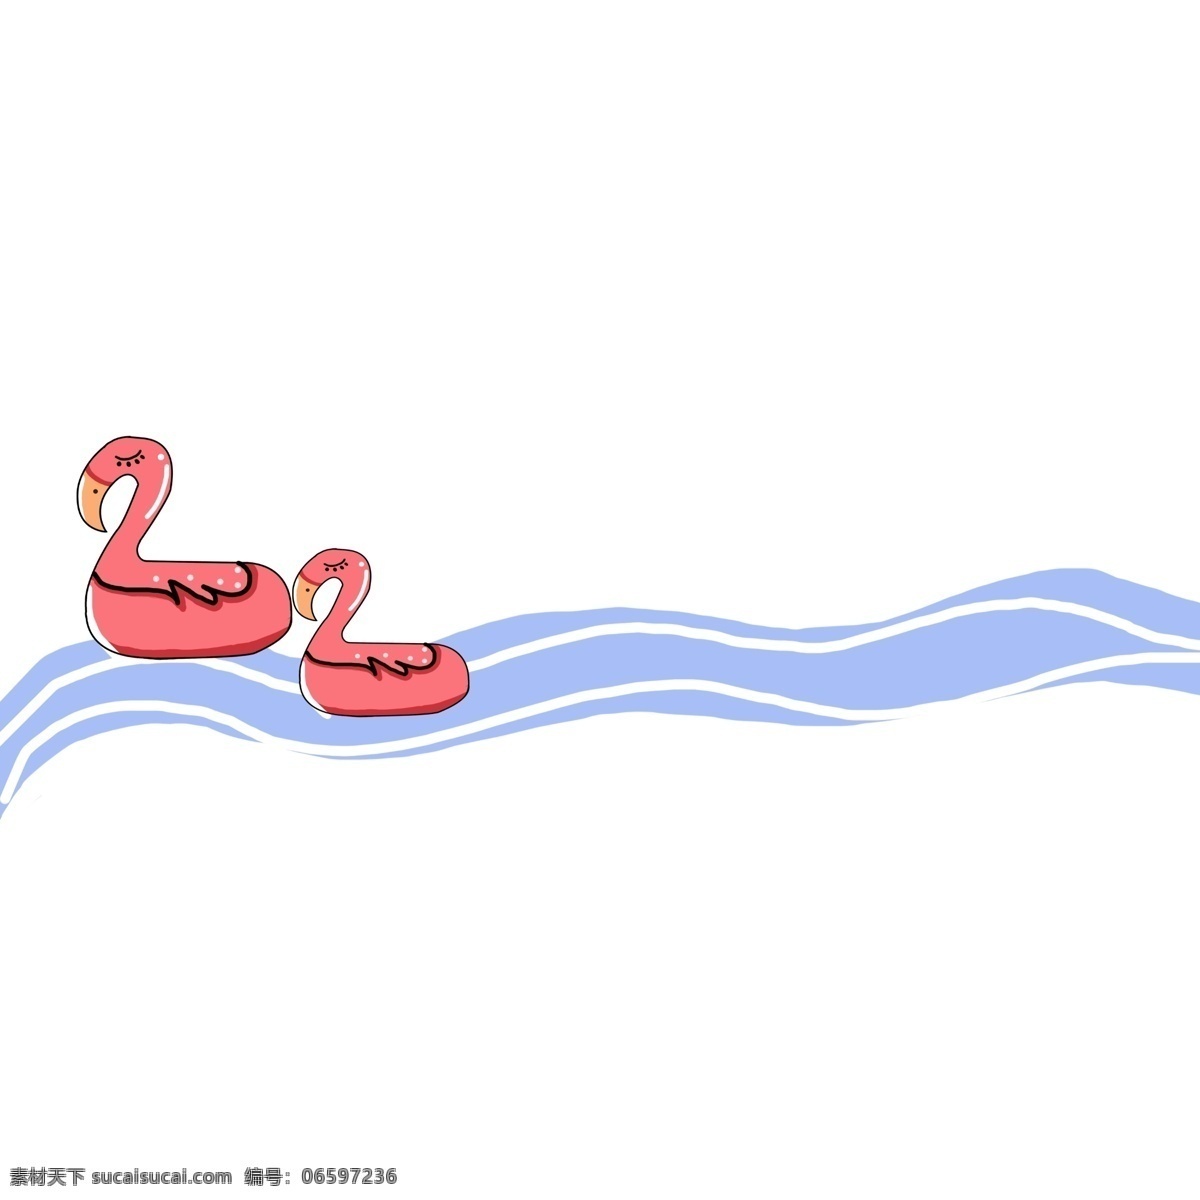 鸭子 游泳 分割线 红色的鸭子 卡通插画 分割线插画 简易分割线 直线分割线 蓝色的清水